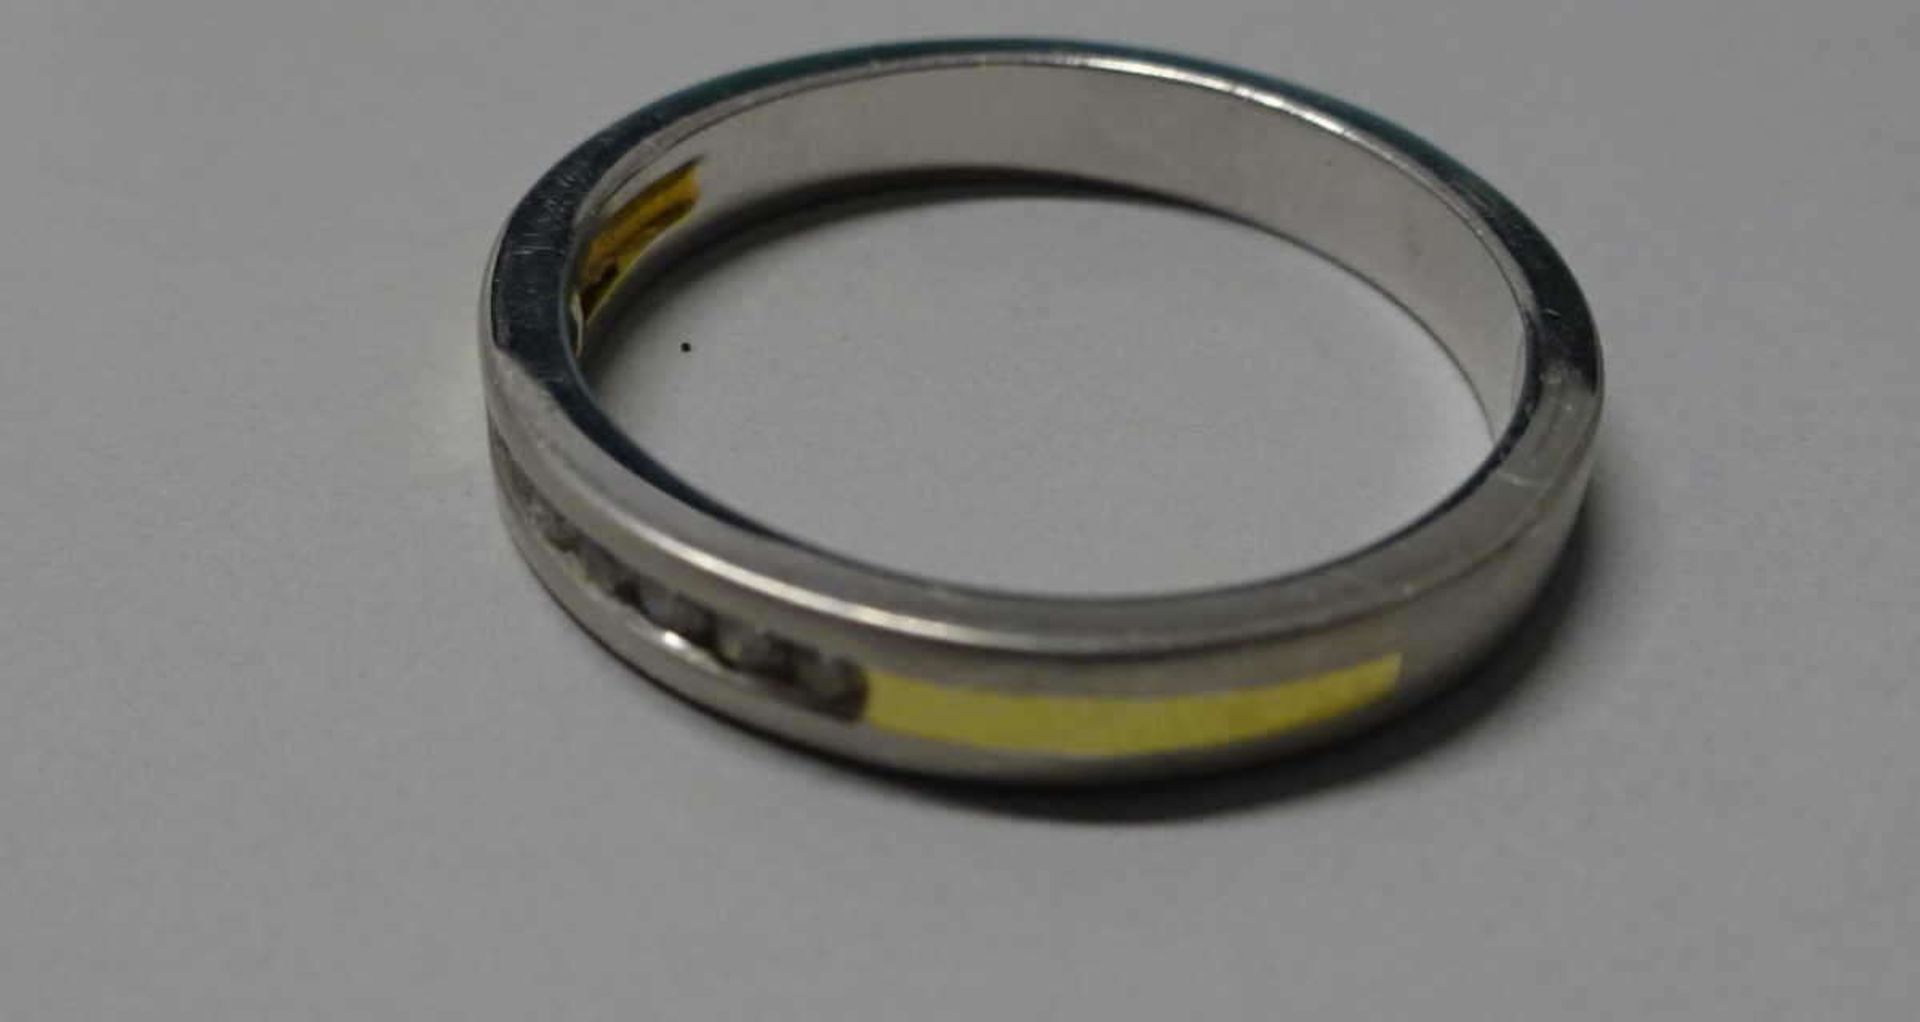 Damenring, 375er Weißgold, besetzt mit 7 kleinen Brillianten. Ringgröße 56. Gewicht ca. 3,4gLadies - Image 2 of 2